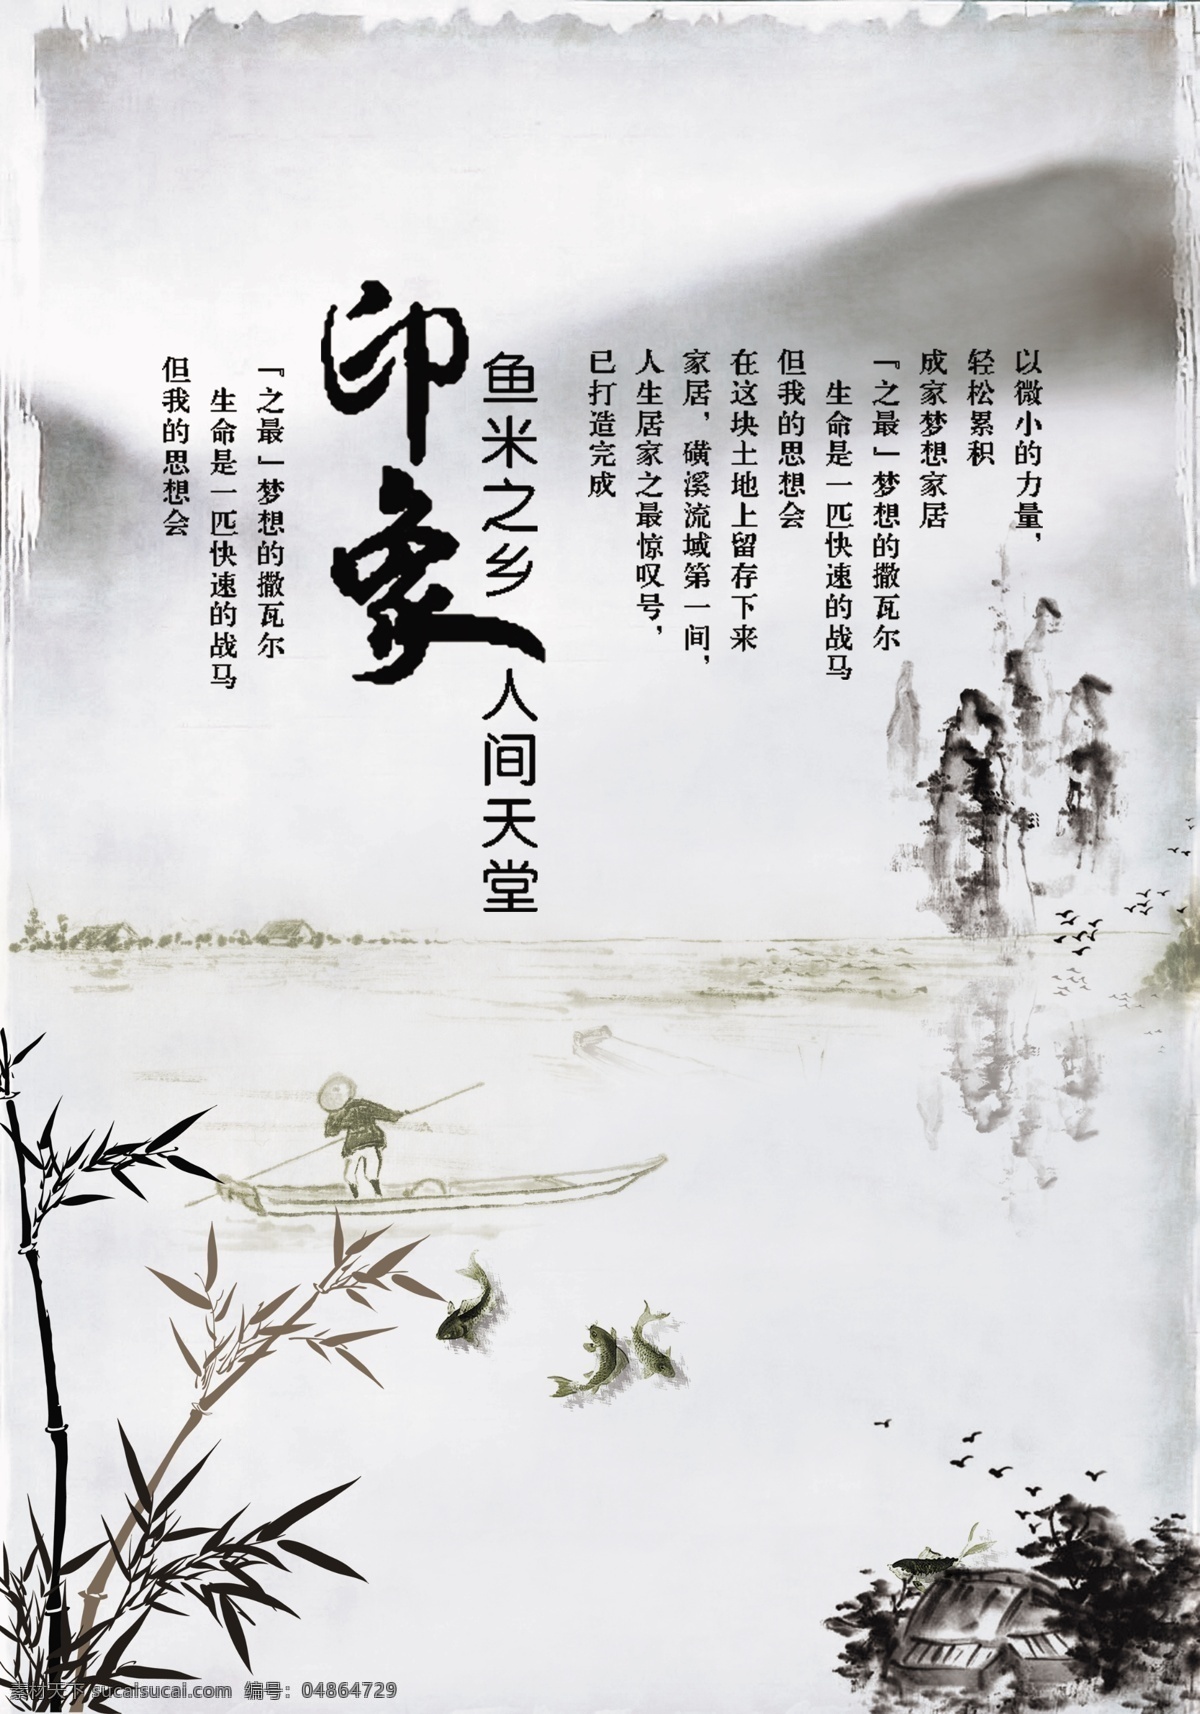 印象 鱼米之乡 人间天堂 水墨 中国风 古典 广告设计模板 源文件